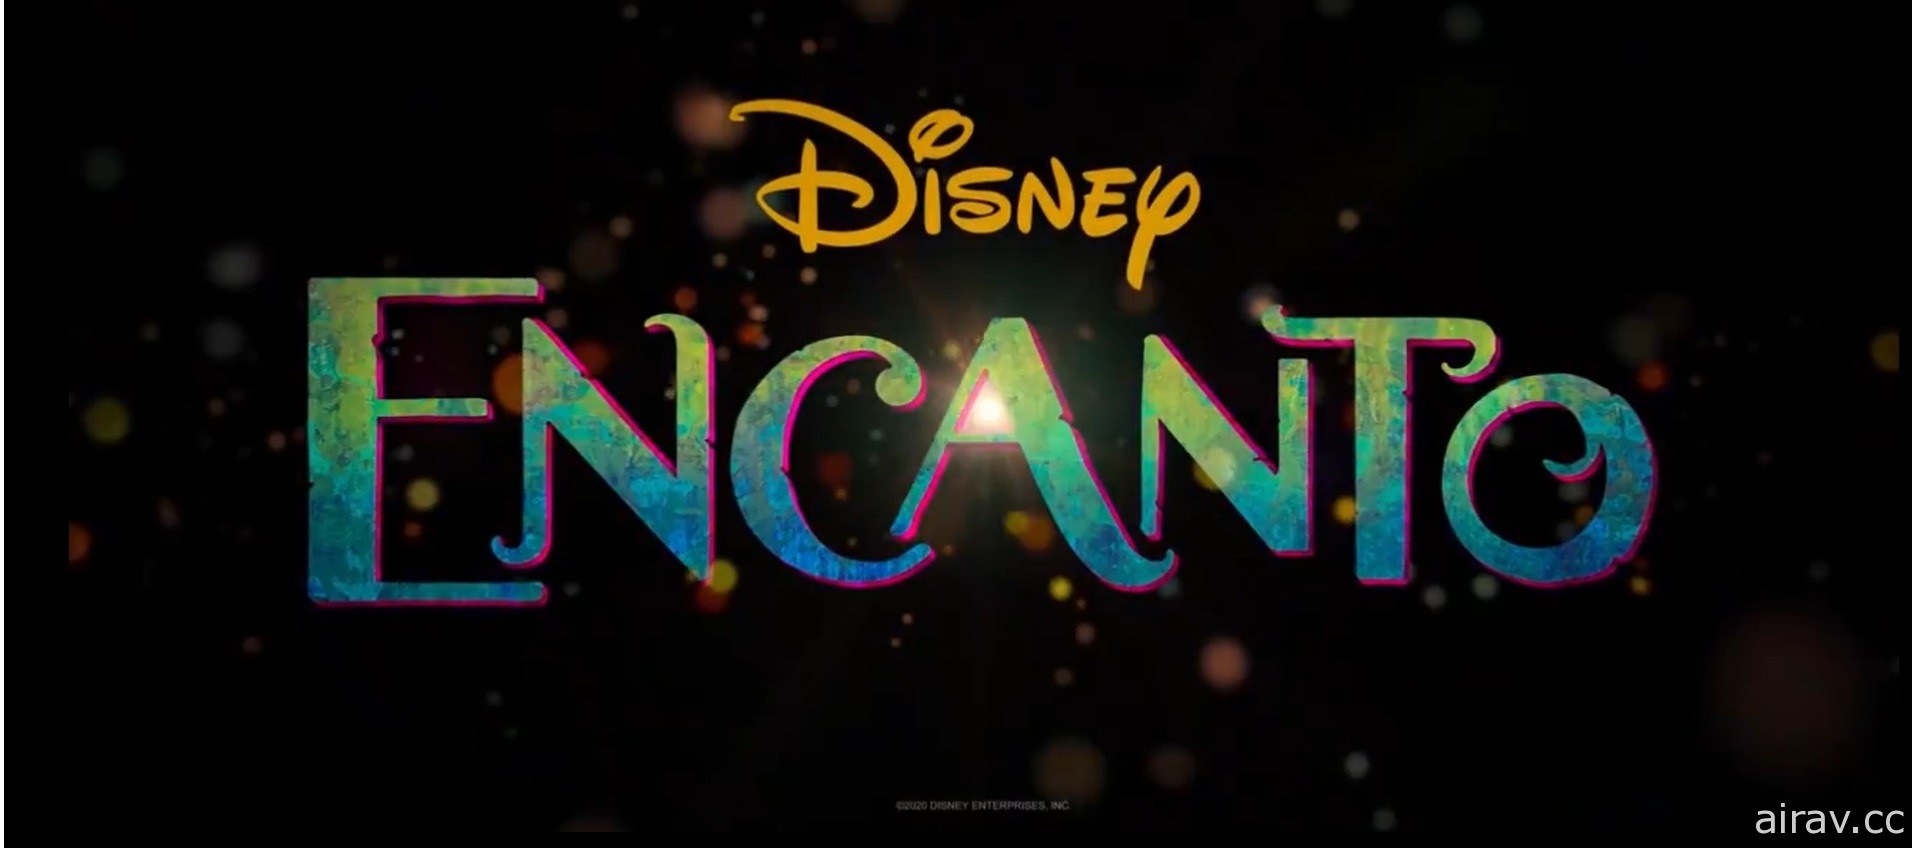 迪士尼動畫電影《Encanto》將於 2021 年秋季上映